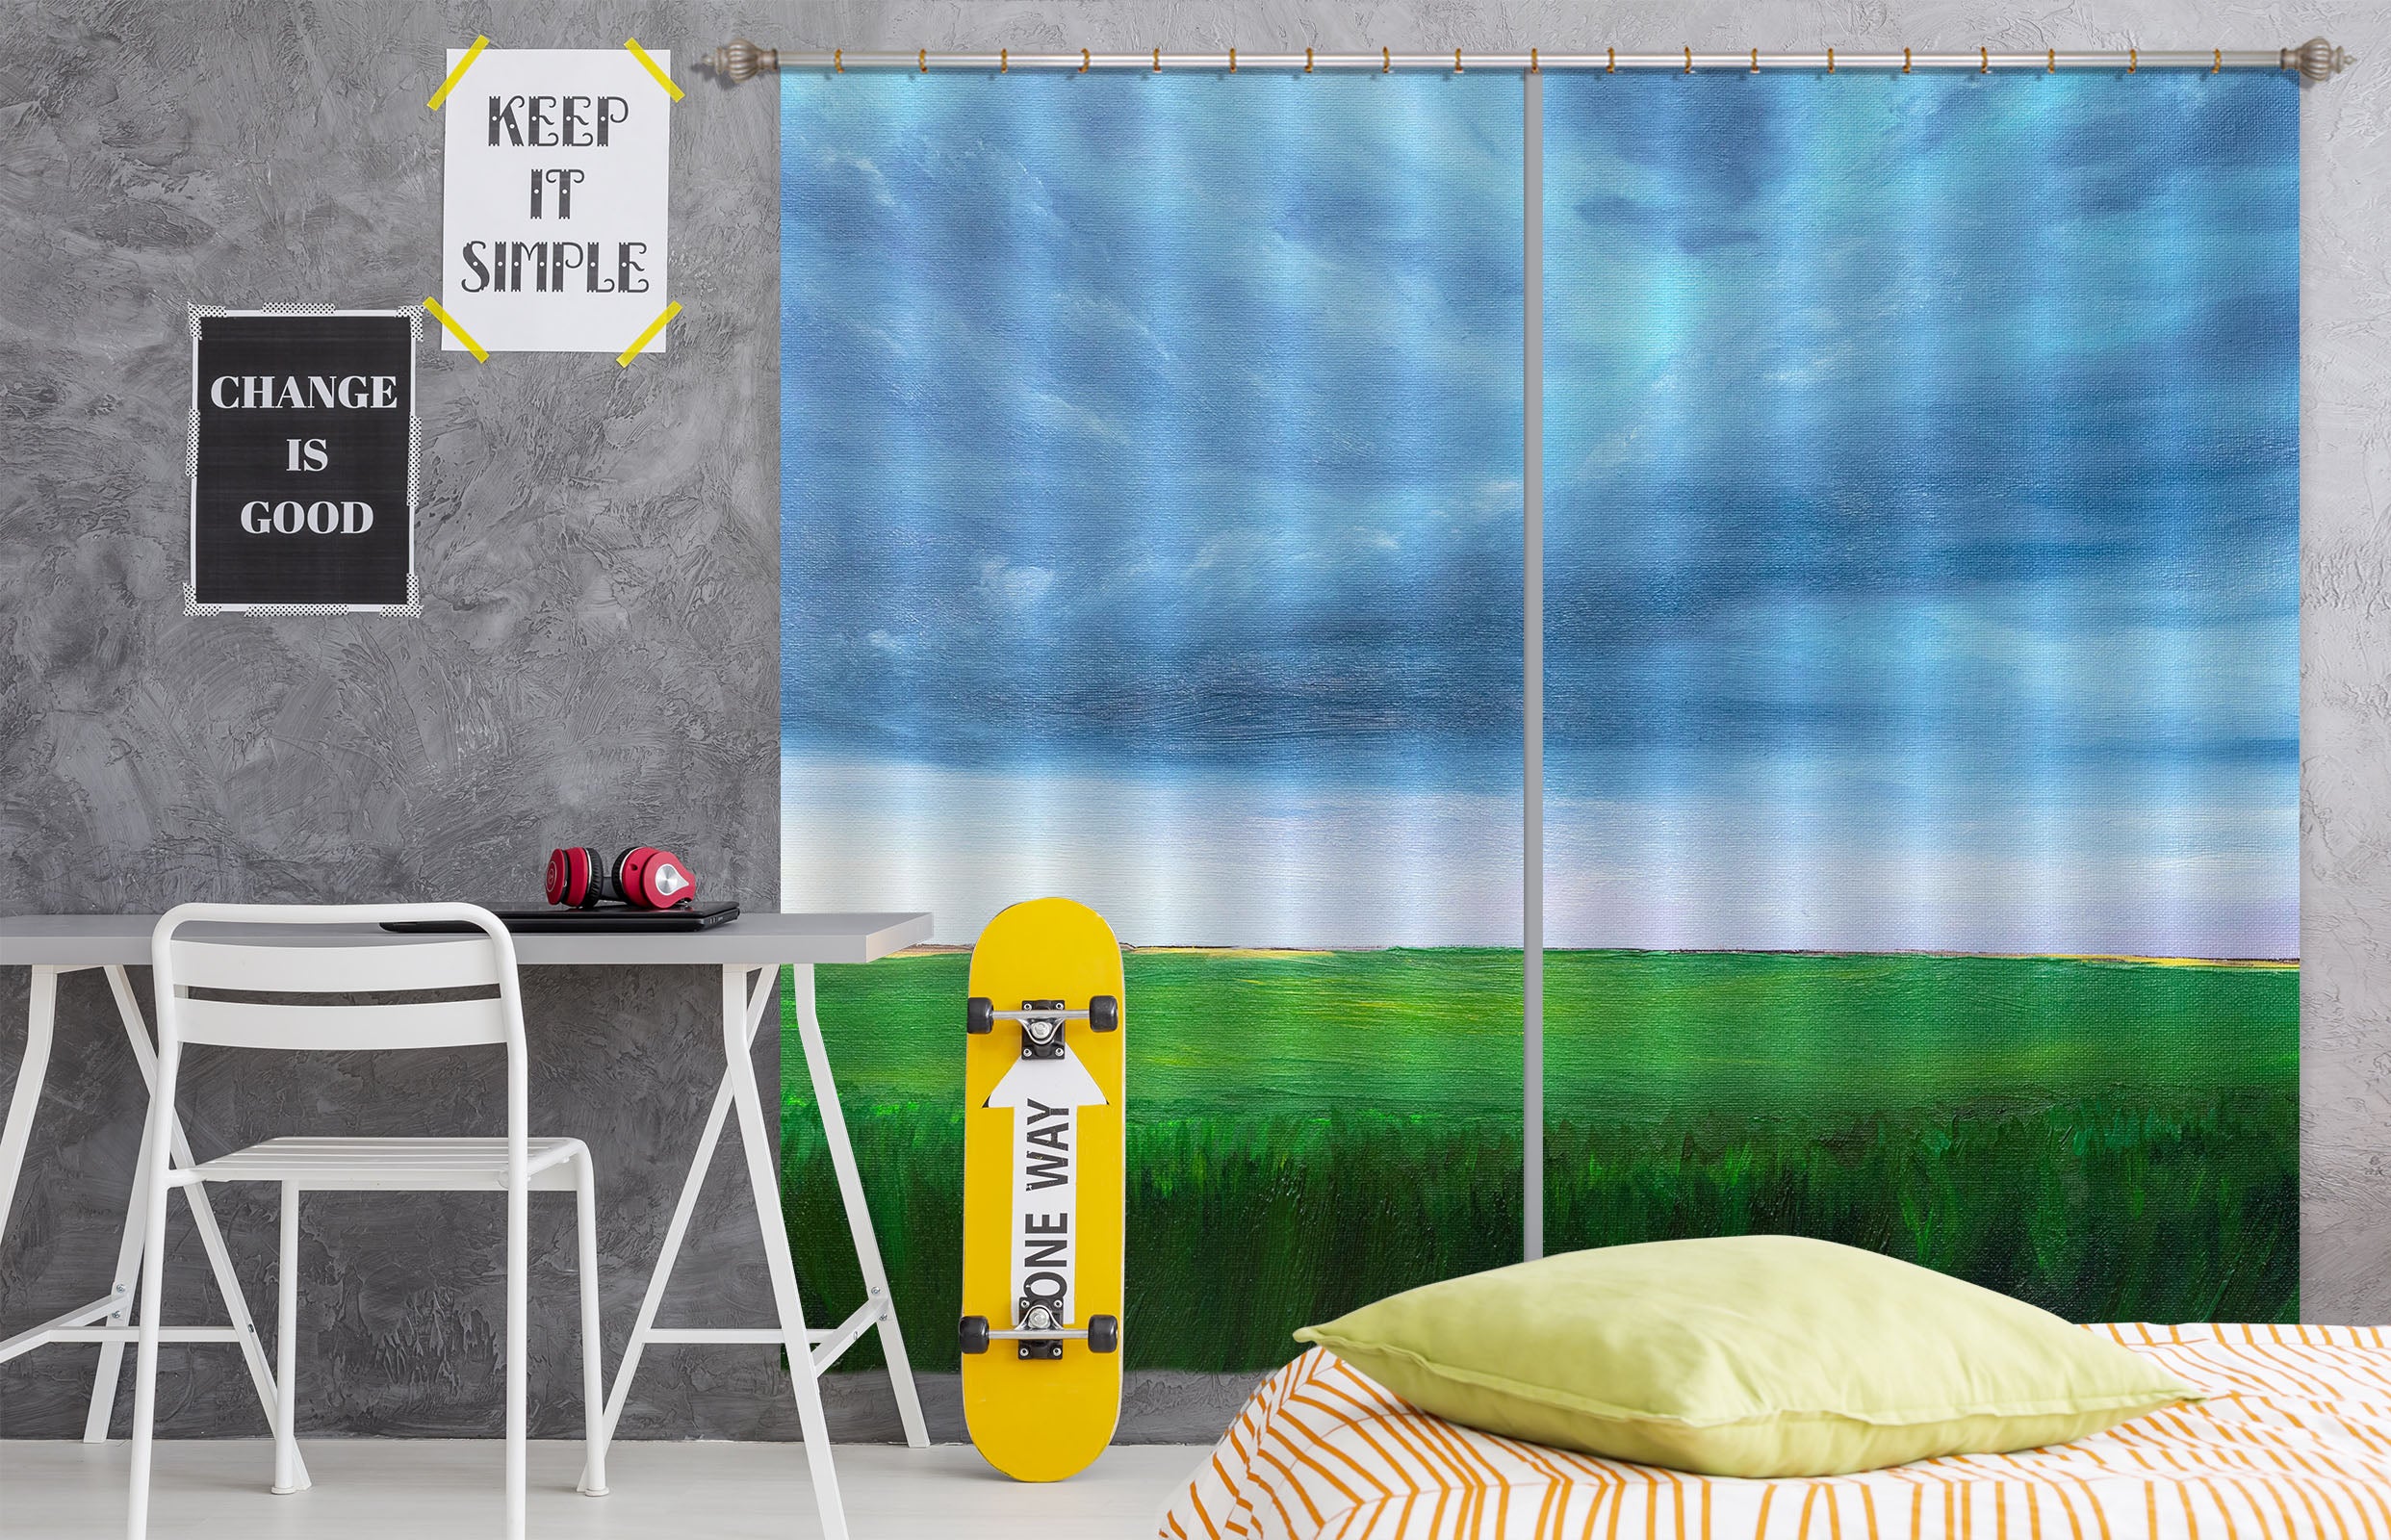 3D Grass Sky 1735 Marina Zotova Curtain Curtains Drapes